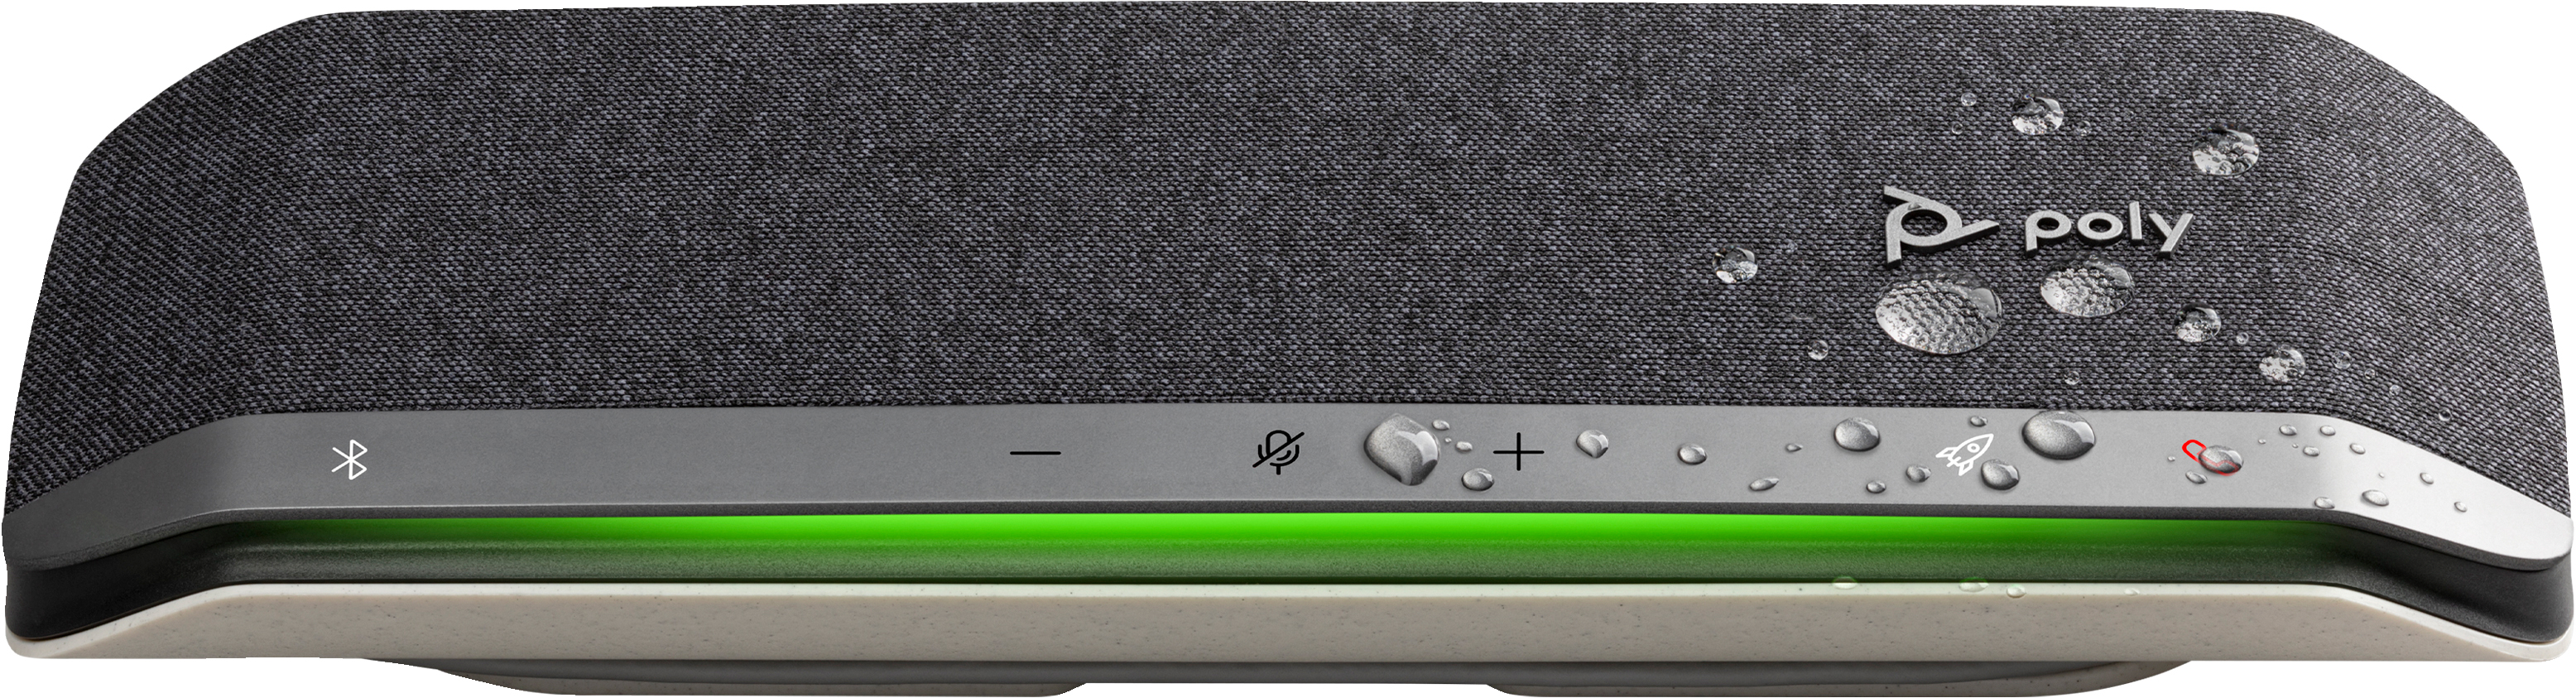 Cпикерфон Poly Sync 40+ с адаптером BT700A, USB-A, USB-C, Bluetooth, серый фото 6